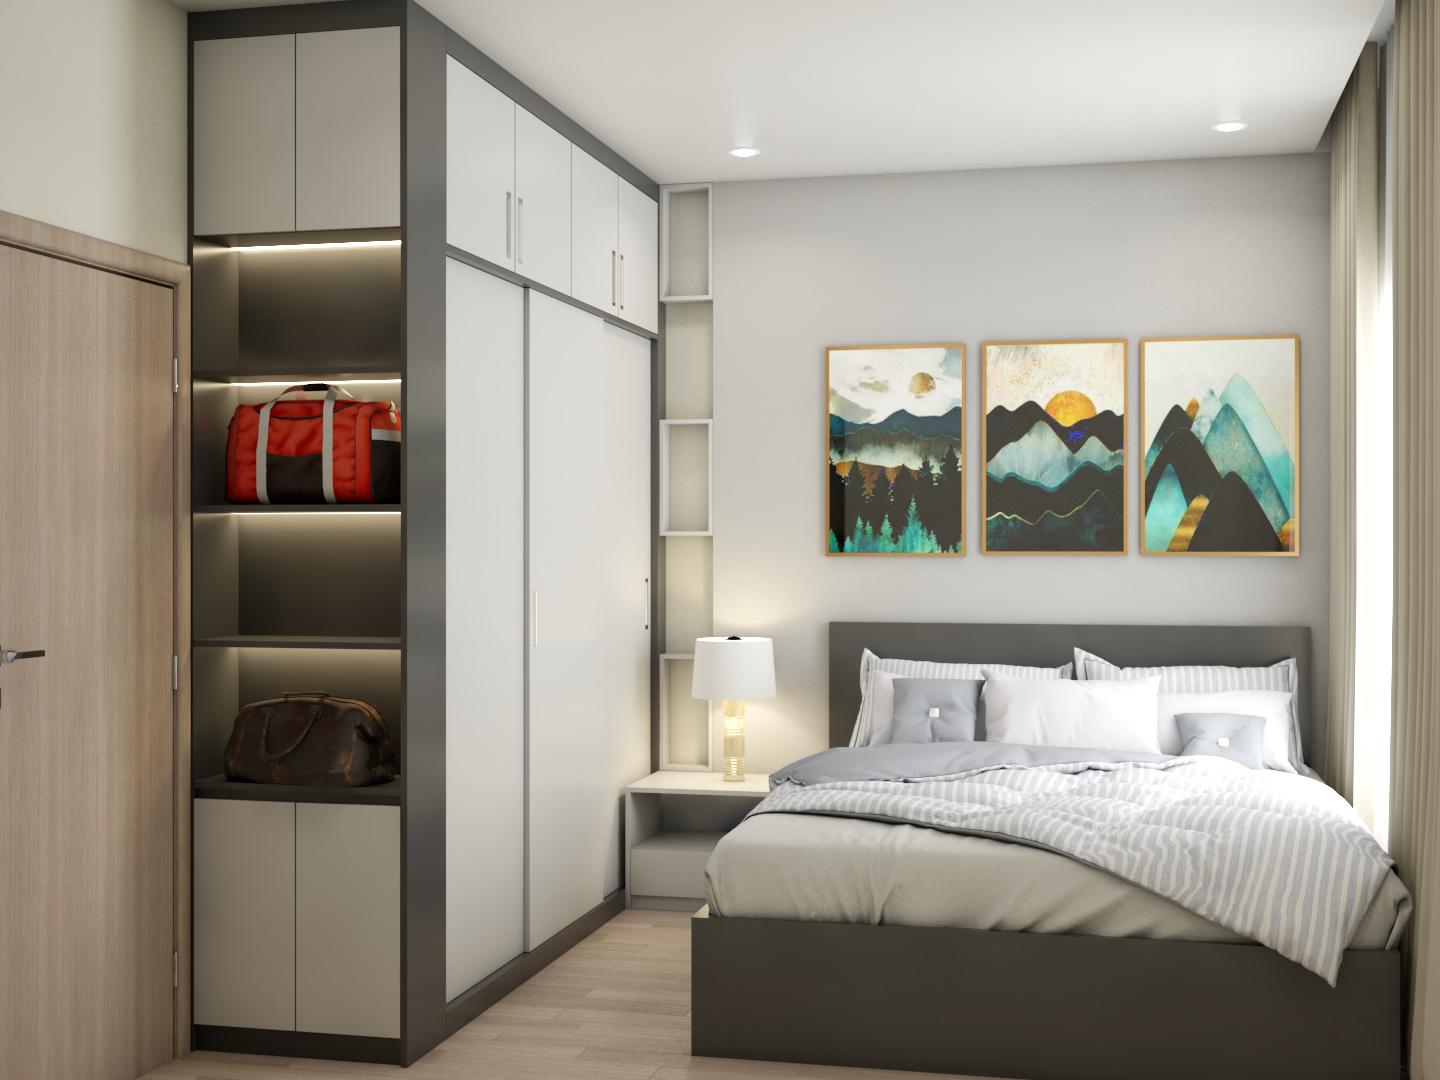 Giường ngủ gỗ công nghiệp - Xu hướng thiết kế nội thất hiện đại